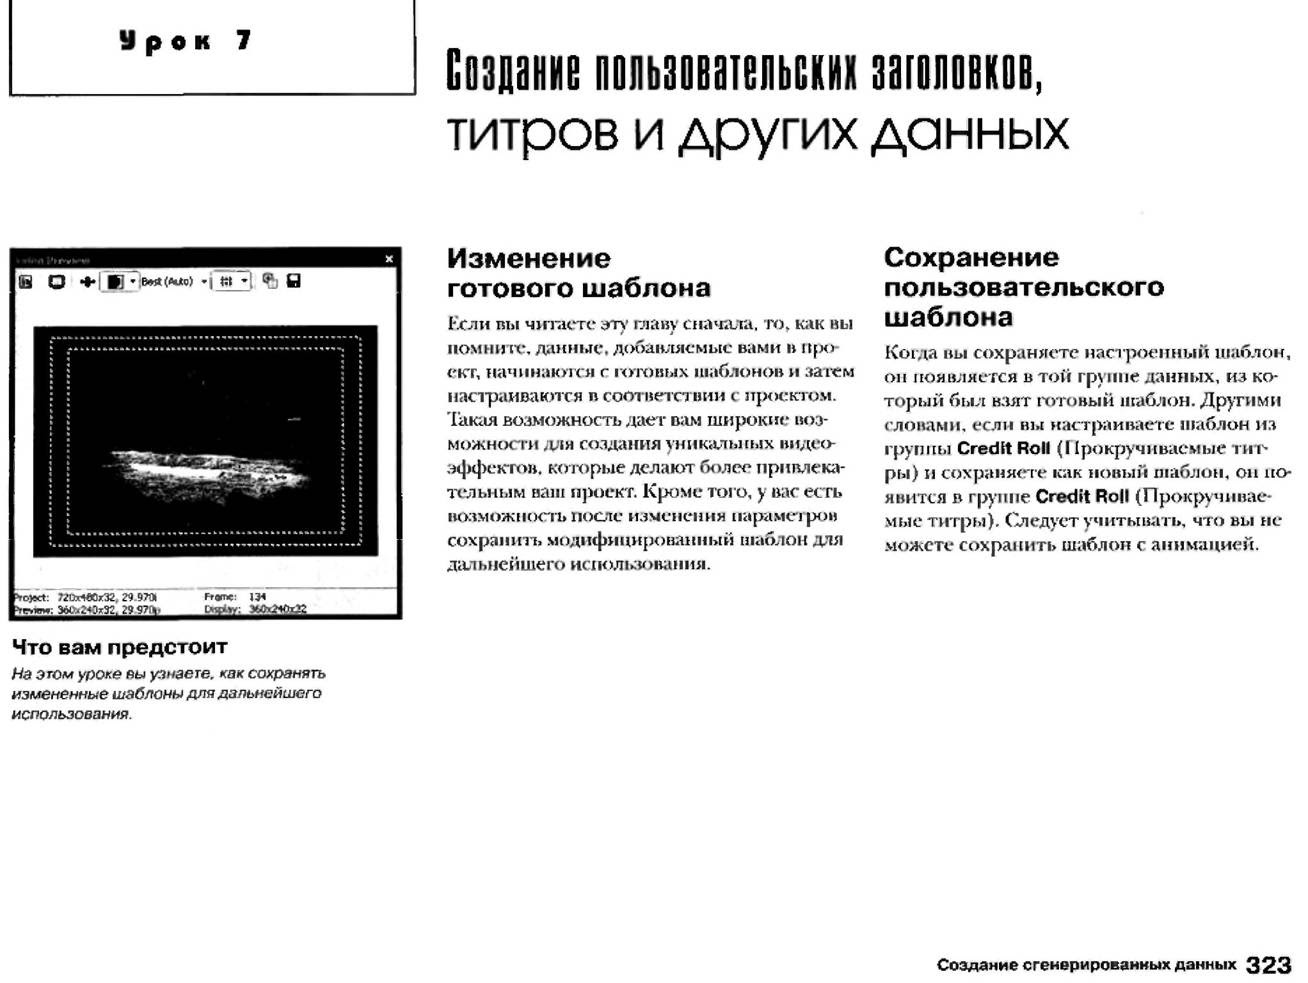 http://redaktori-uroki.3dn.ru/_ph/12/865801125.jpg